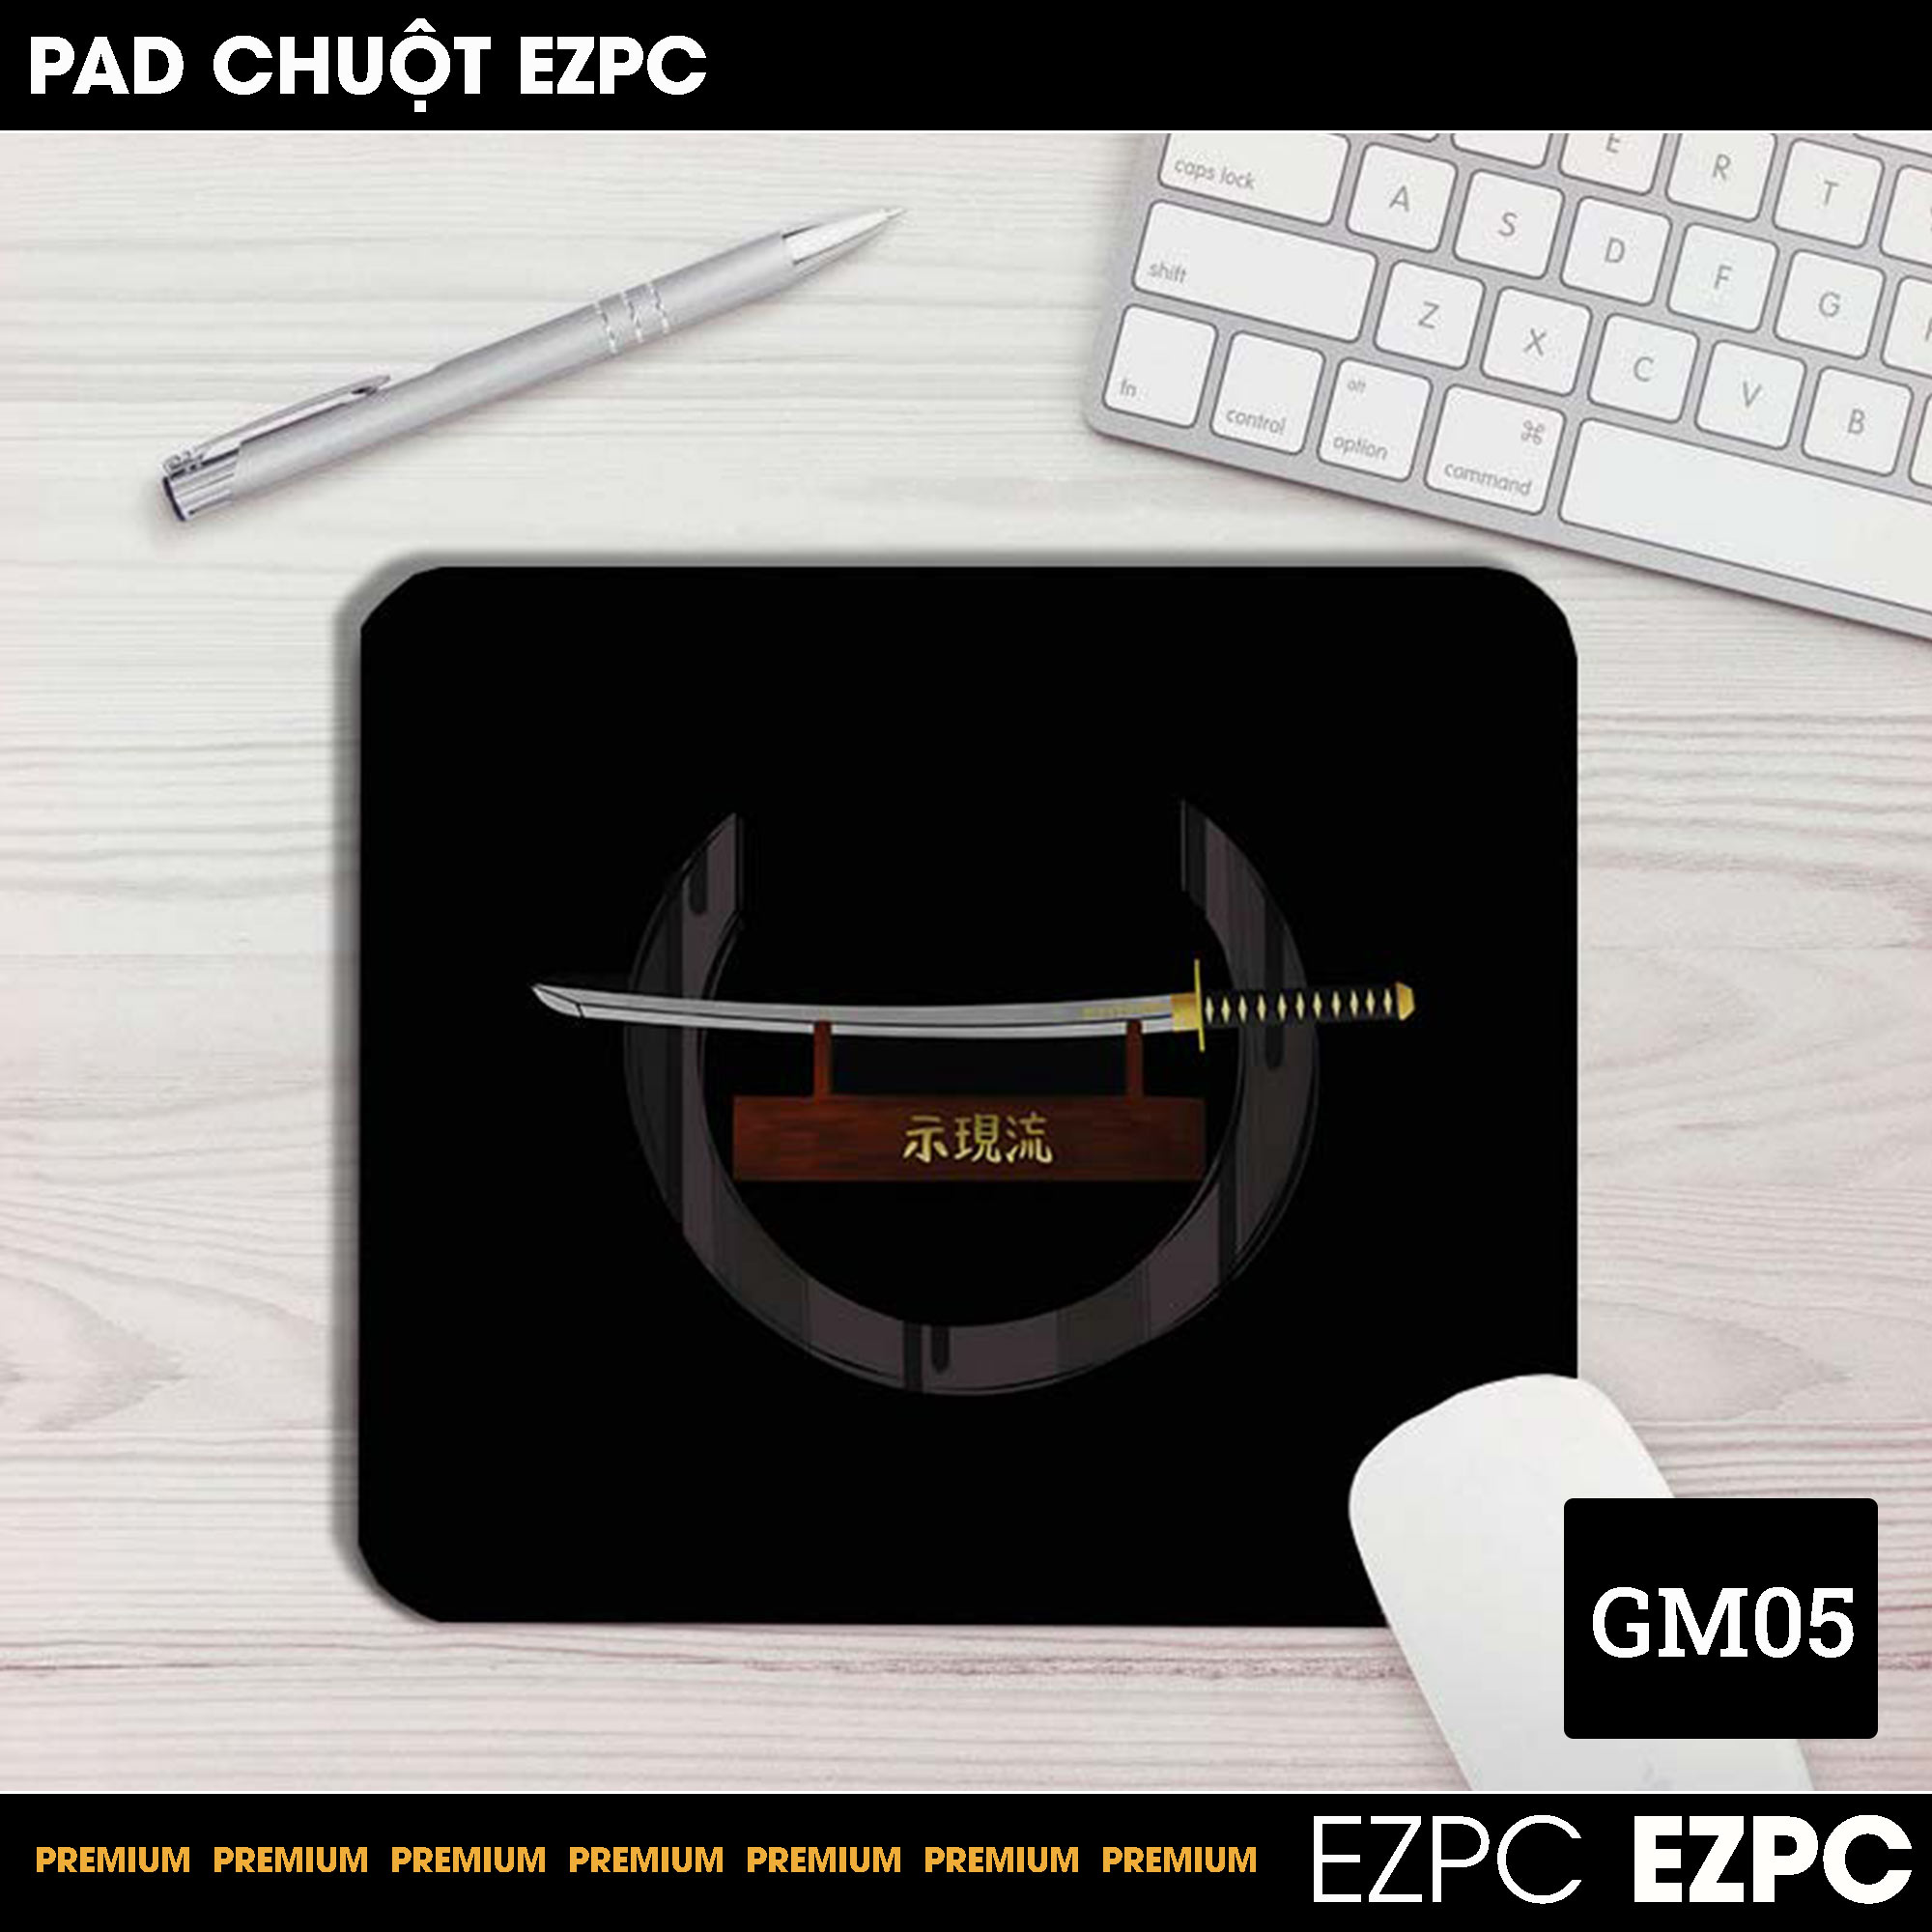 Miếng Lót Chuột, Pad Chuột Cỡ Nhỏ GM05 Size 45x40 | EZPC